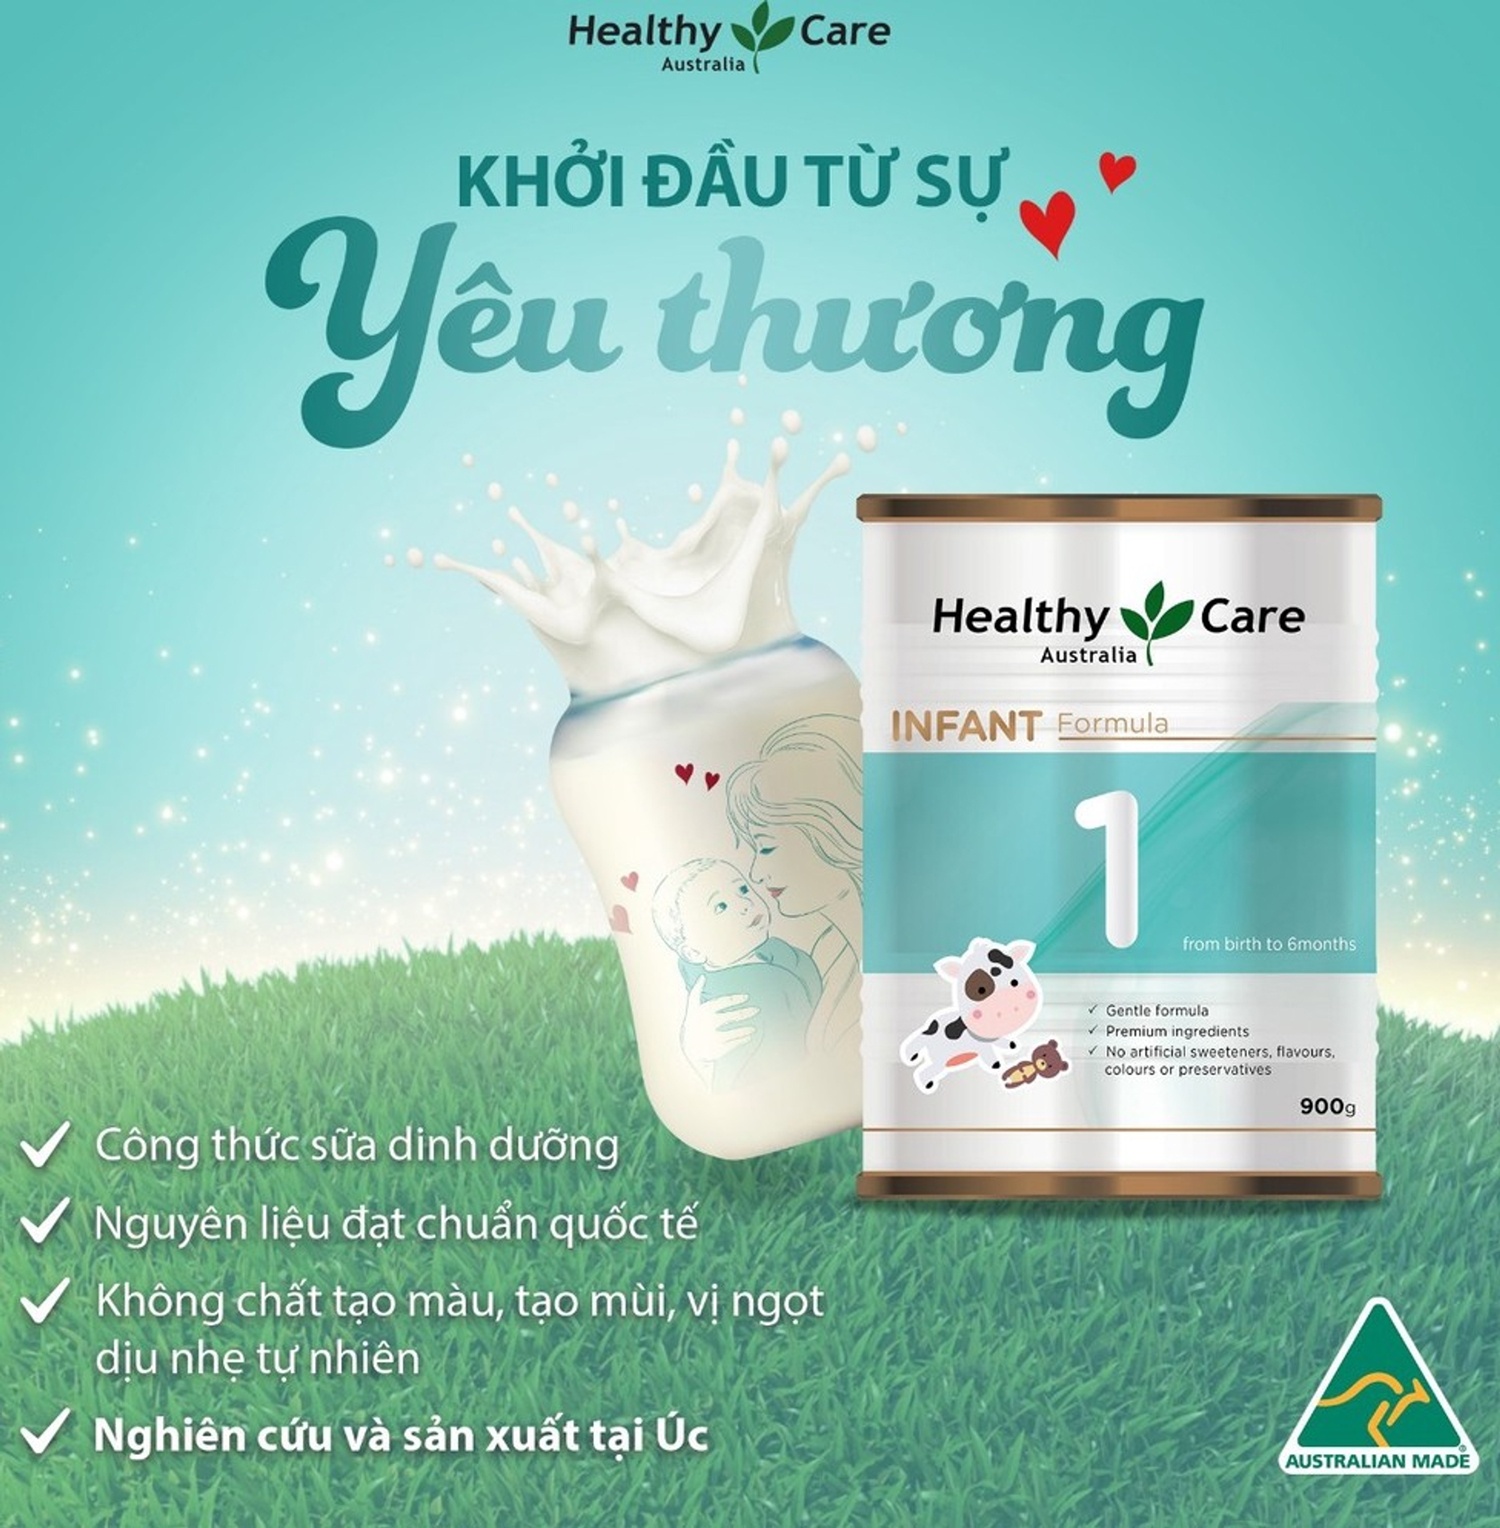 Pha-sua-healthy-care-so-1-o-nhiet-do-bao-nhieu-la-dung-chuan (2).jpg